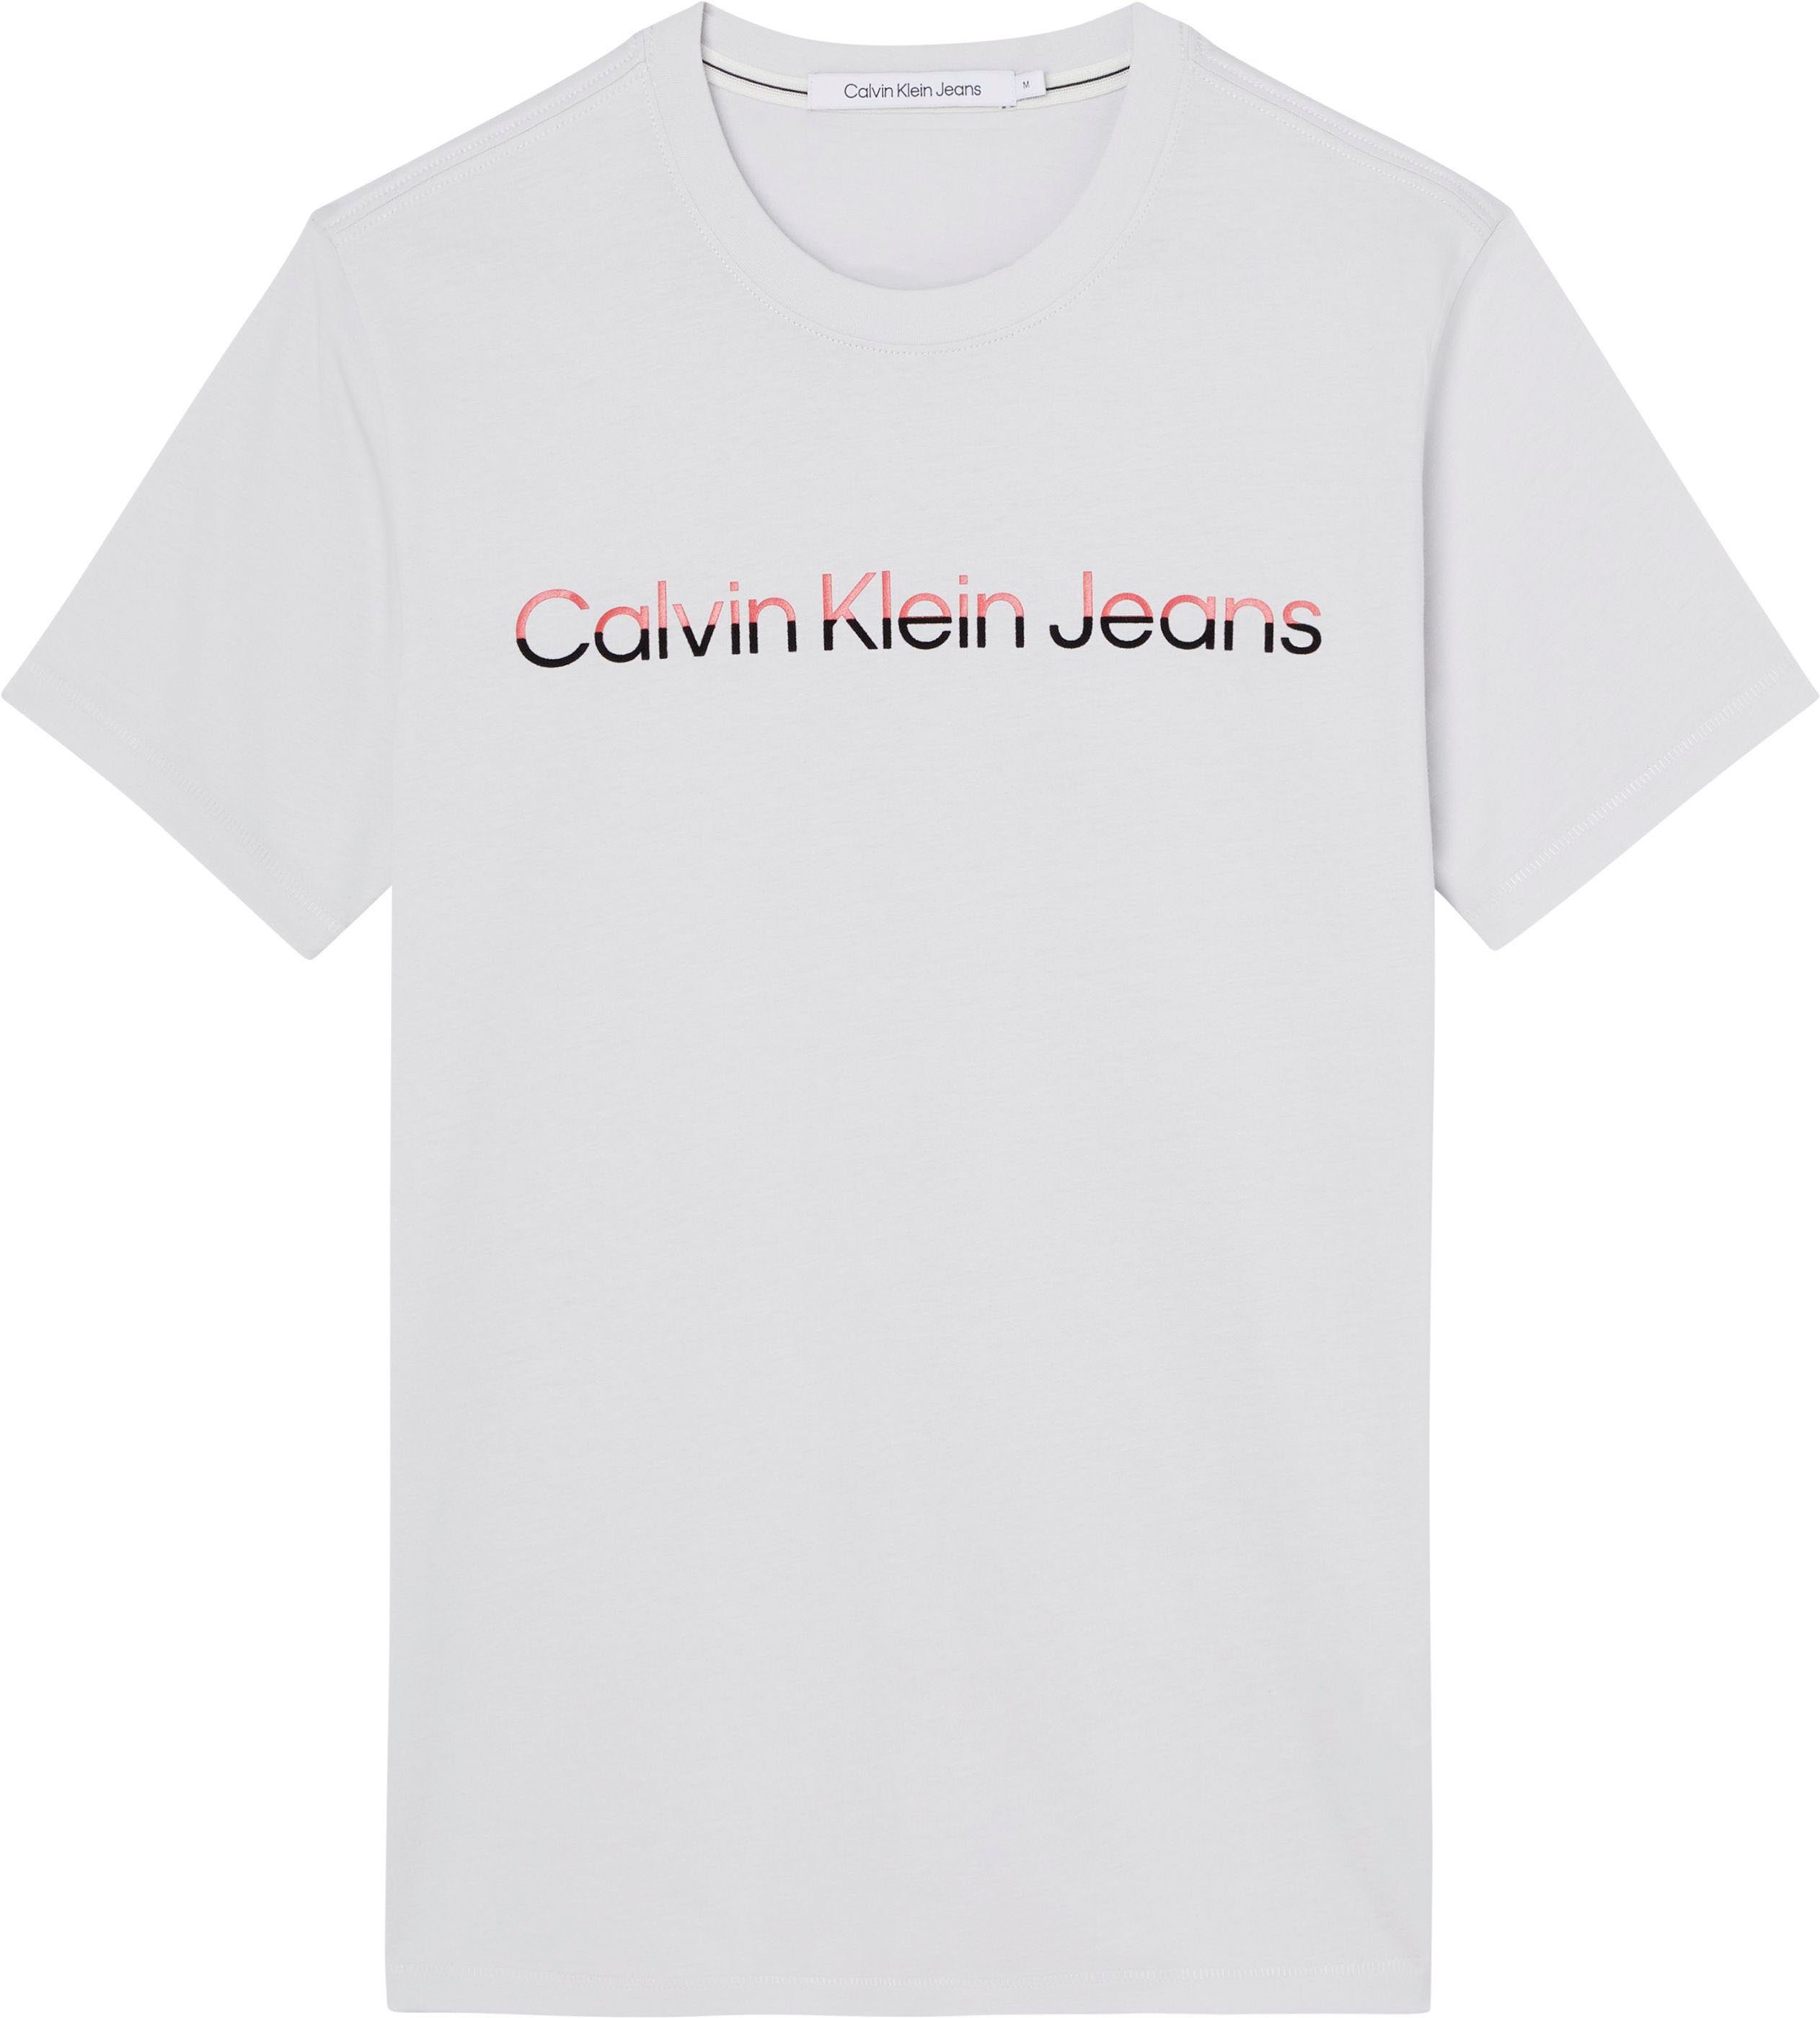 MIXED mit Calvin Klein grau Jeans INSTITUTIONA Klein Calvin T-Shirt Logoschriftzug Shirt